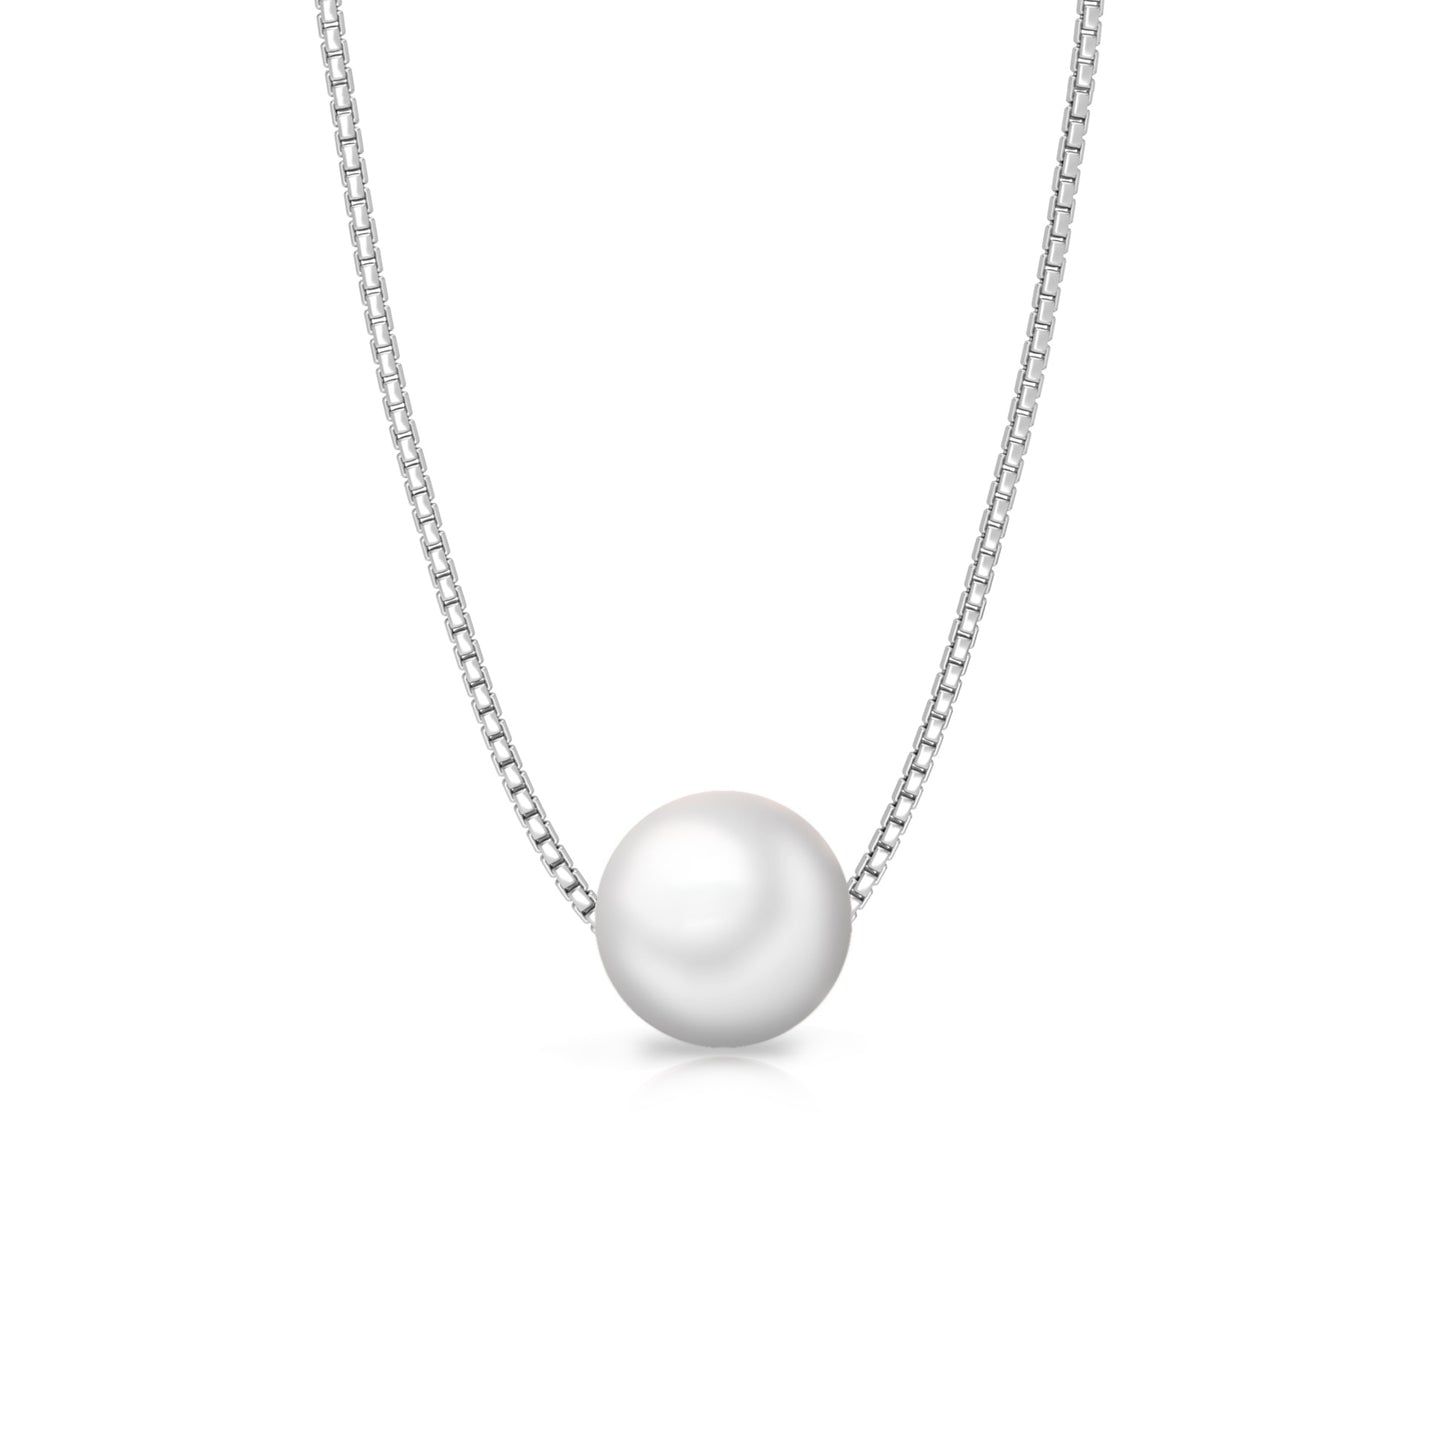 Preeti's Classic White Pearl Necklace - 925 Silver